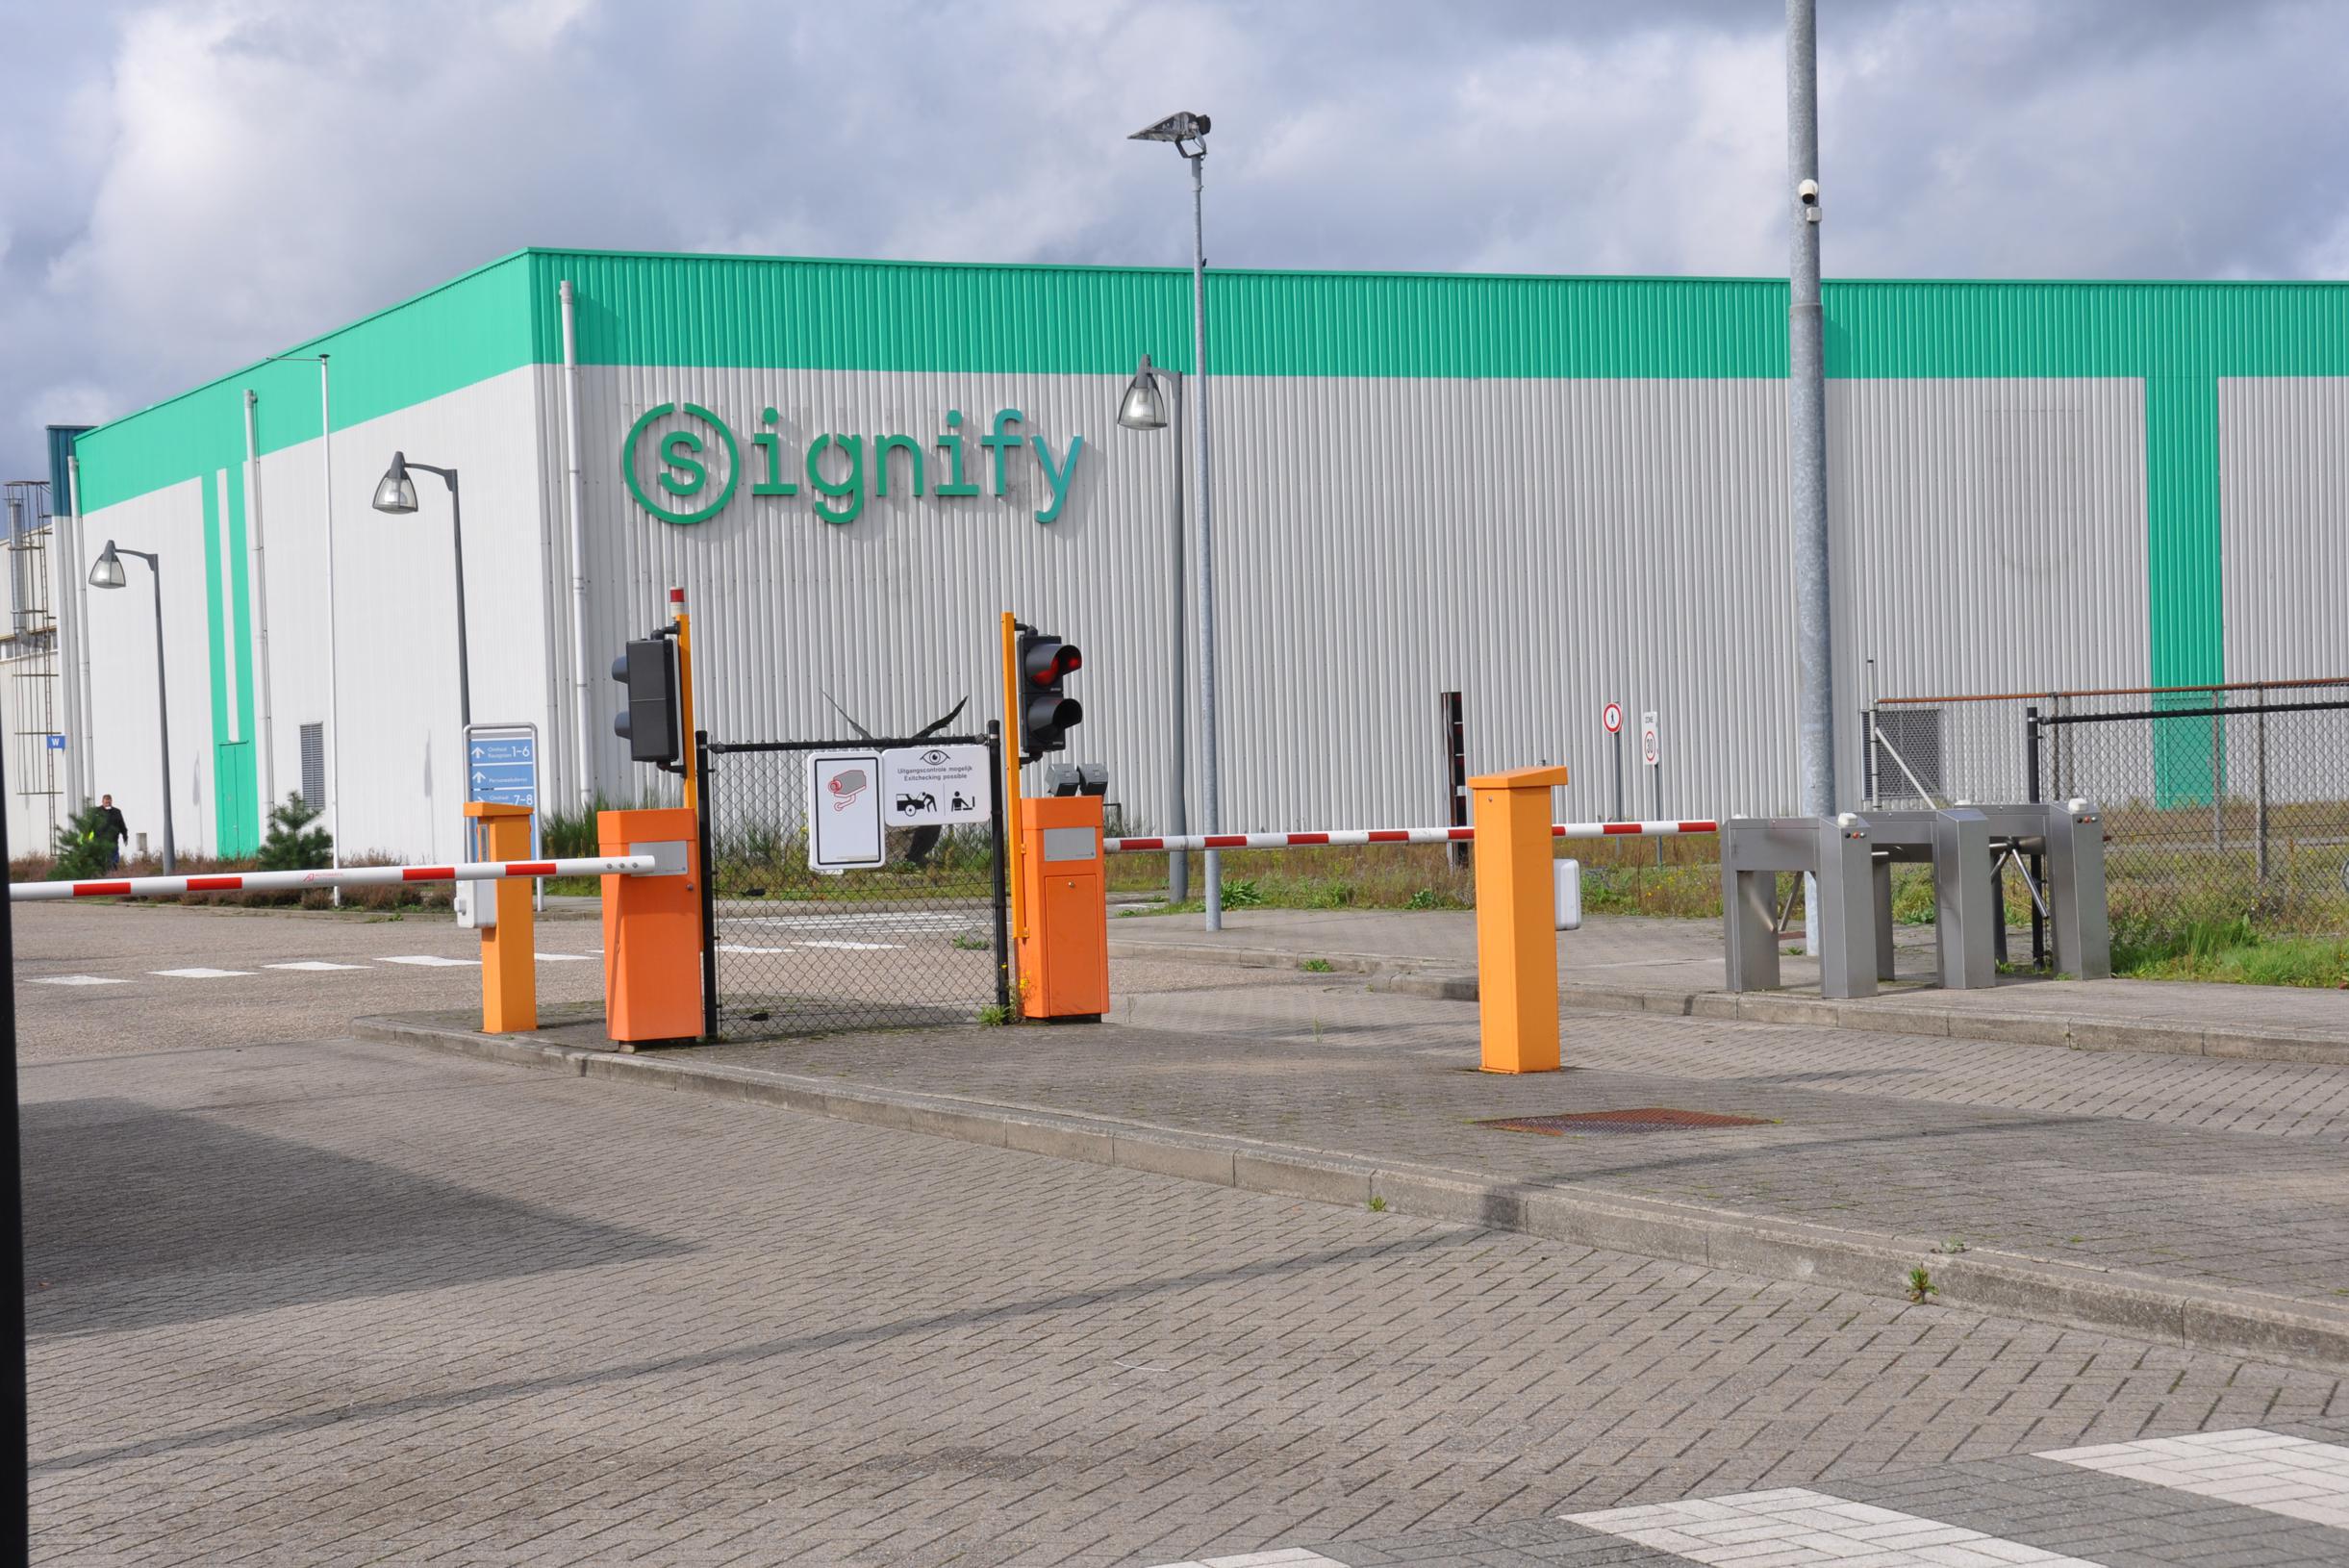 Signify i Turnhout undviker ytterligare uppsägningar i belysningsföretag